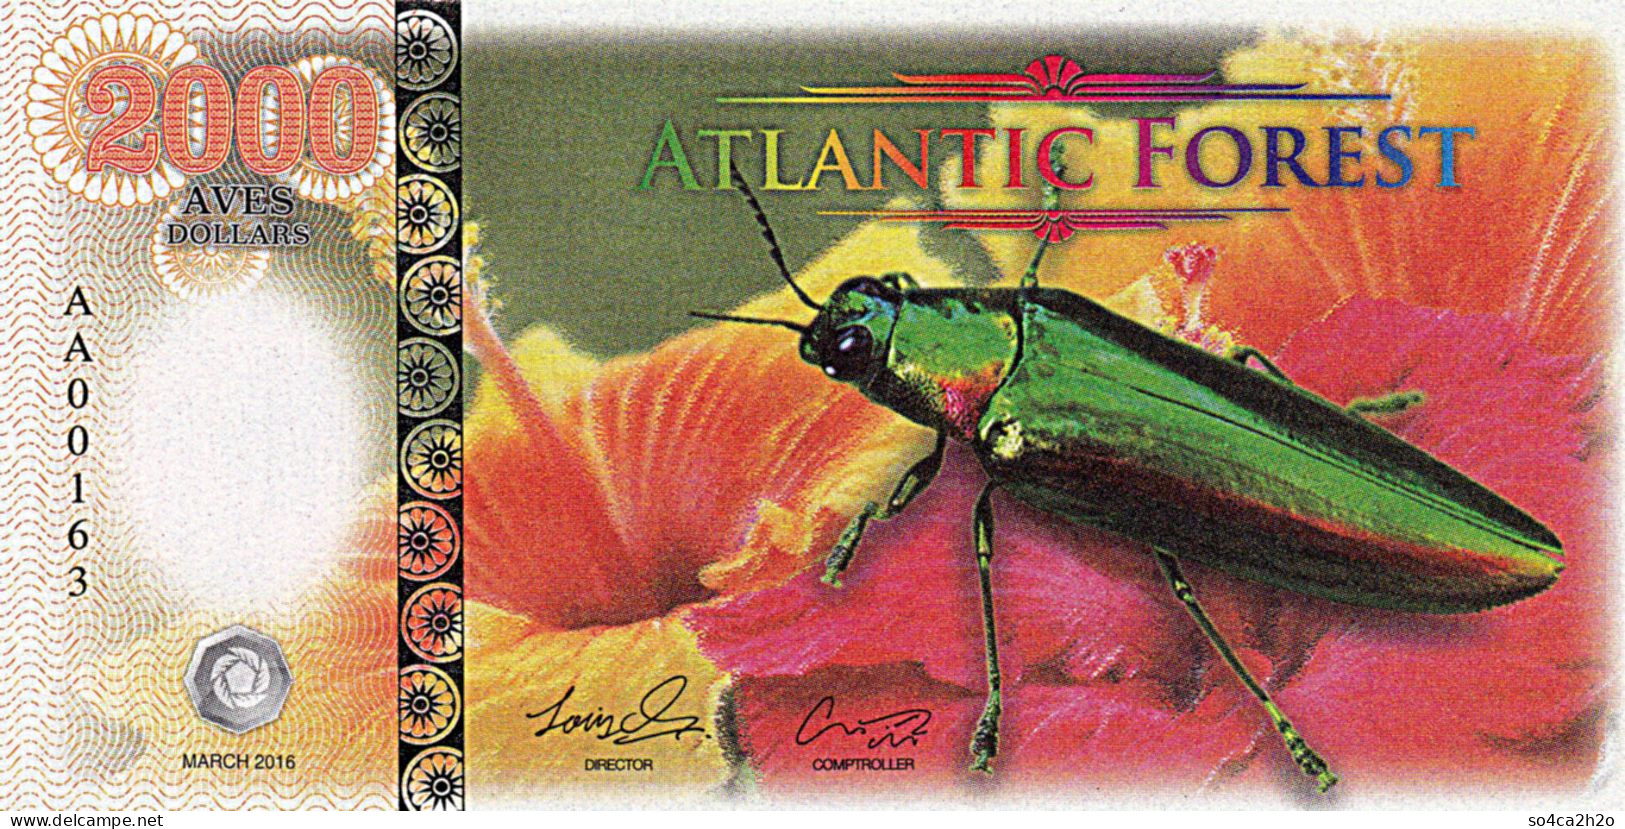 Atlantic Forest 2000 Aves Dollars 2016  UNC Scarabée Et Fleur D'hibiscus - Fictifs & Spécimens